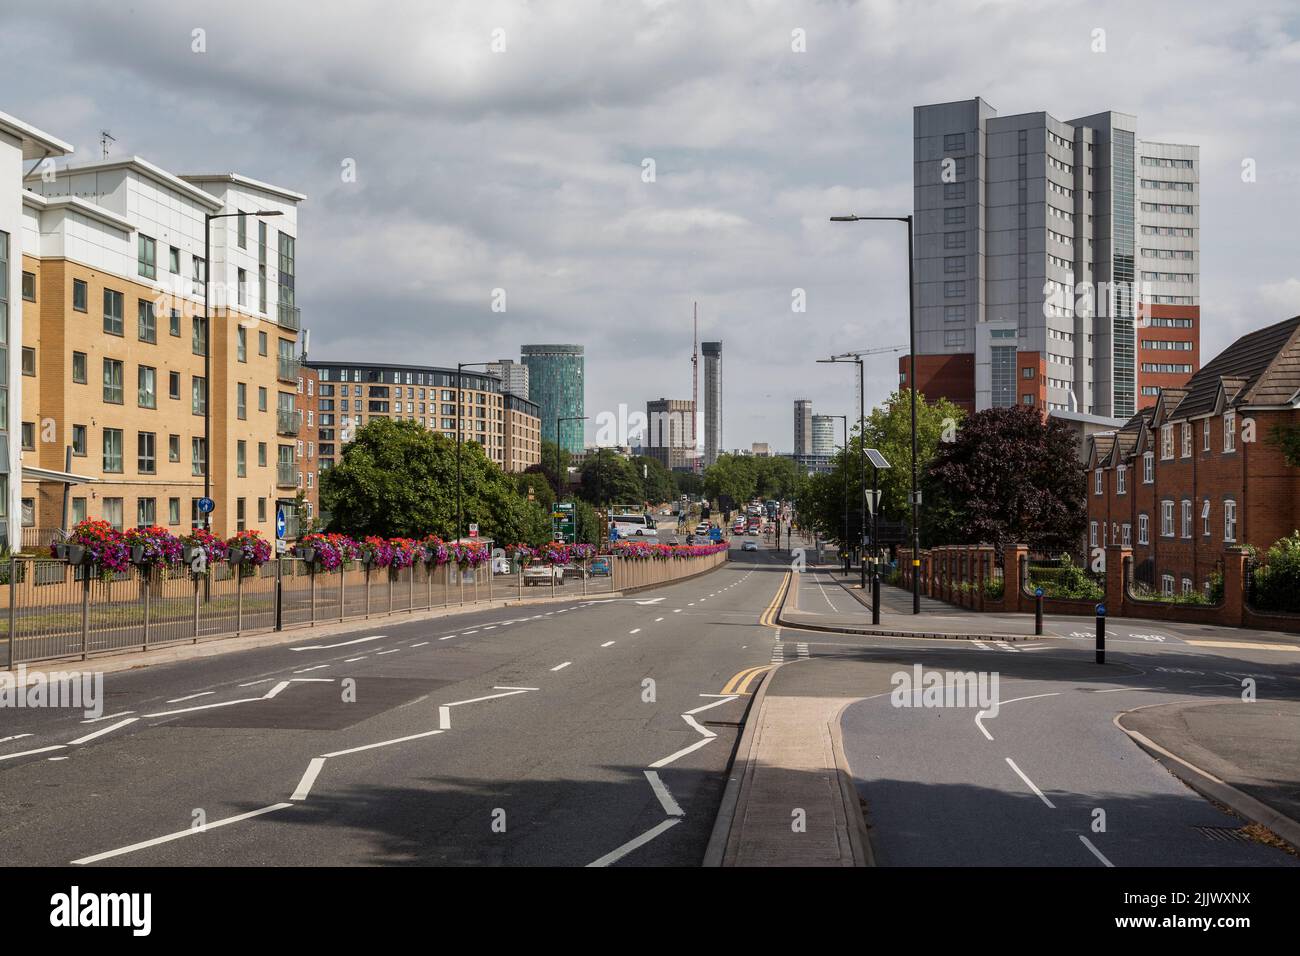 Birmingham City Centre, Blick von Süden auf die A38 Bristol Road. Neue Turmblöcke sind im Bau zu sehen. Stockfoto